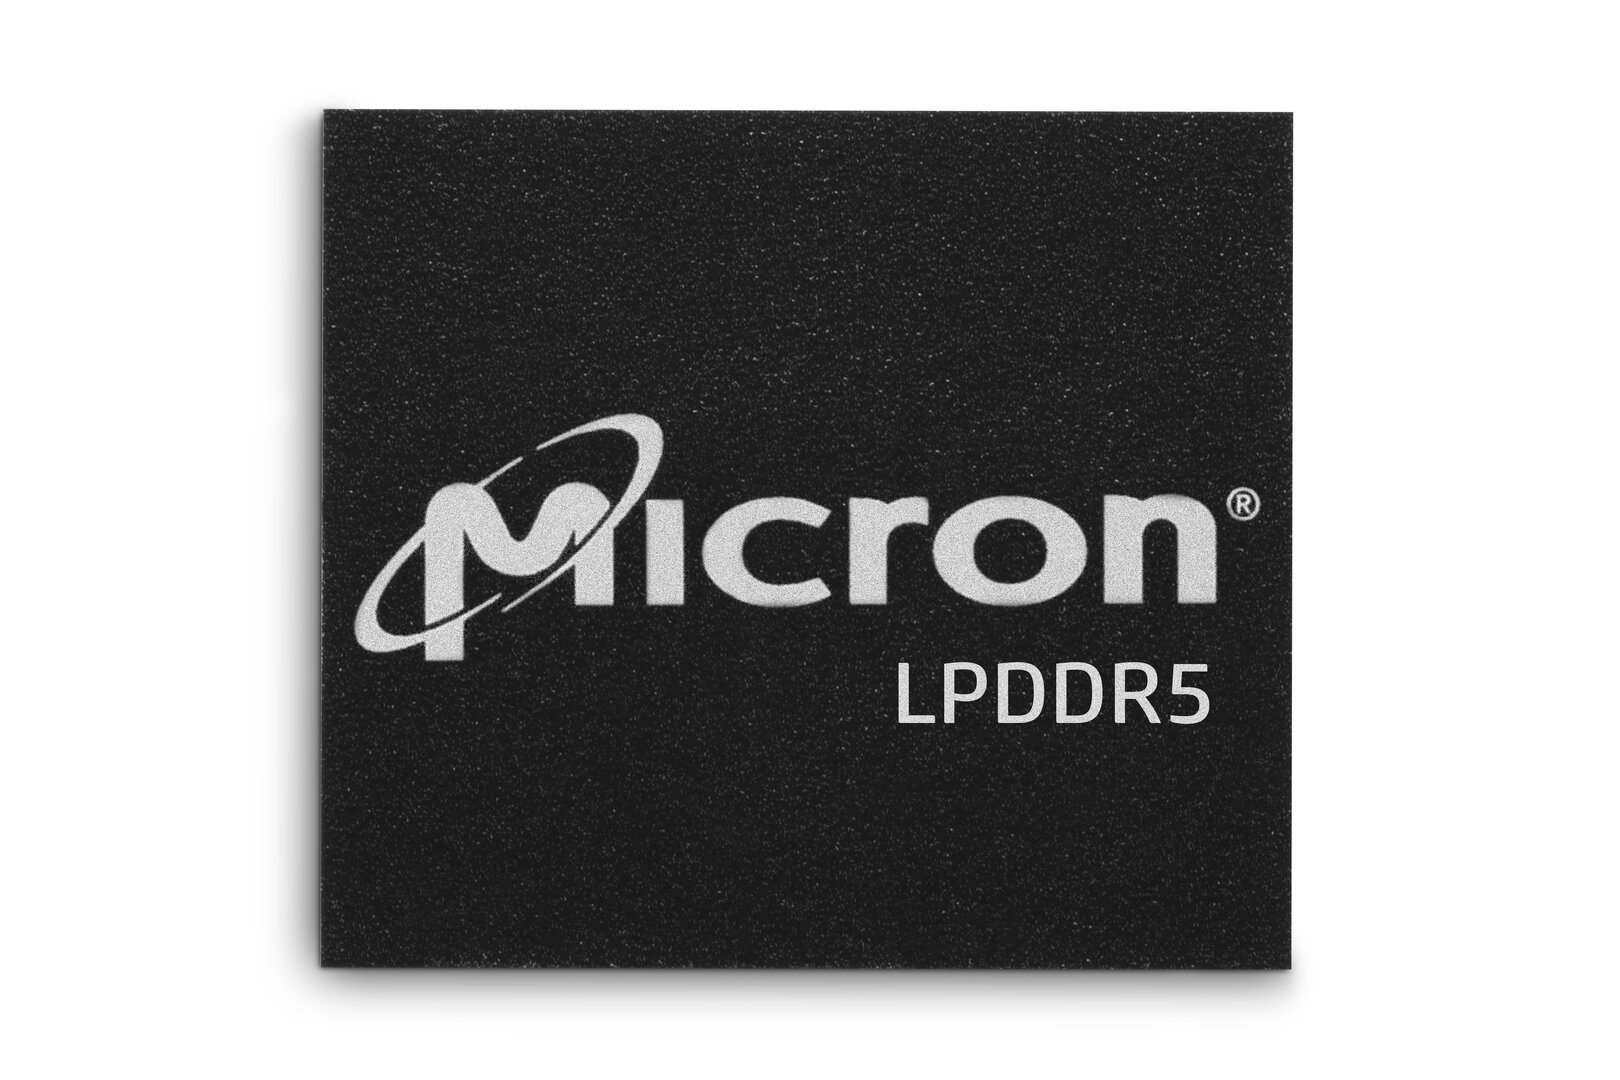 Micron LPDDR5 "class =" viền hình ảnh